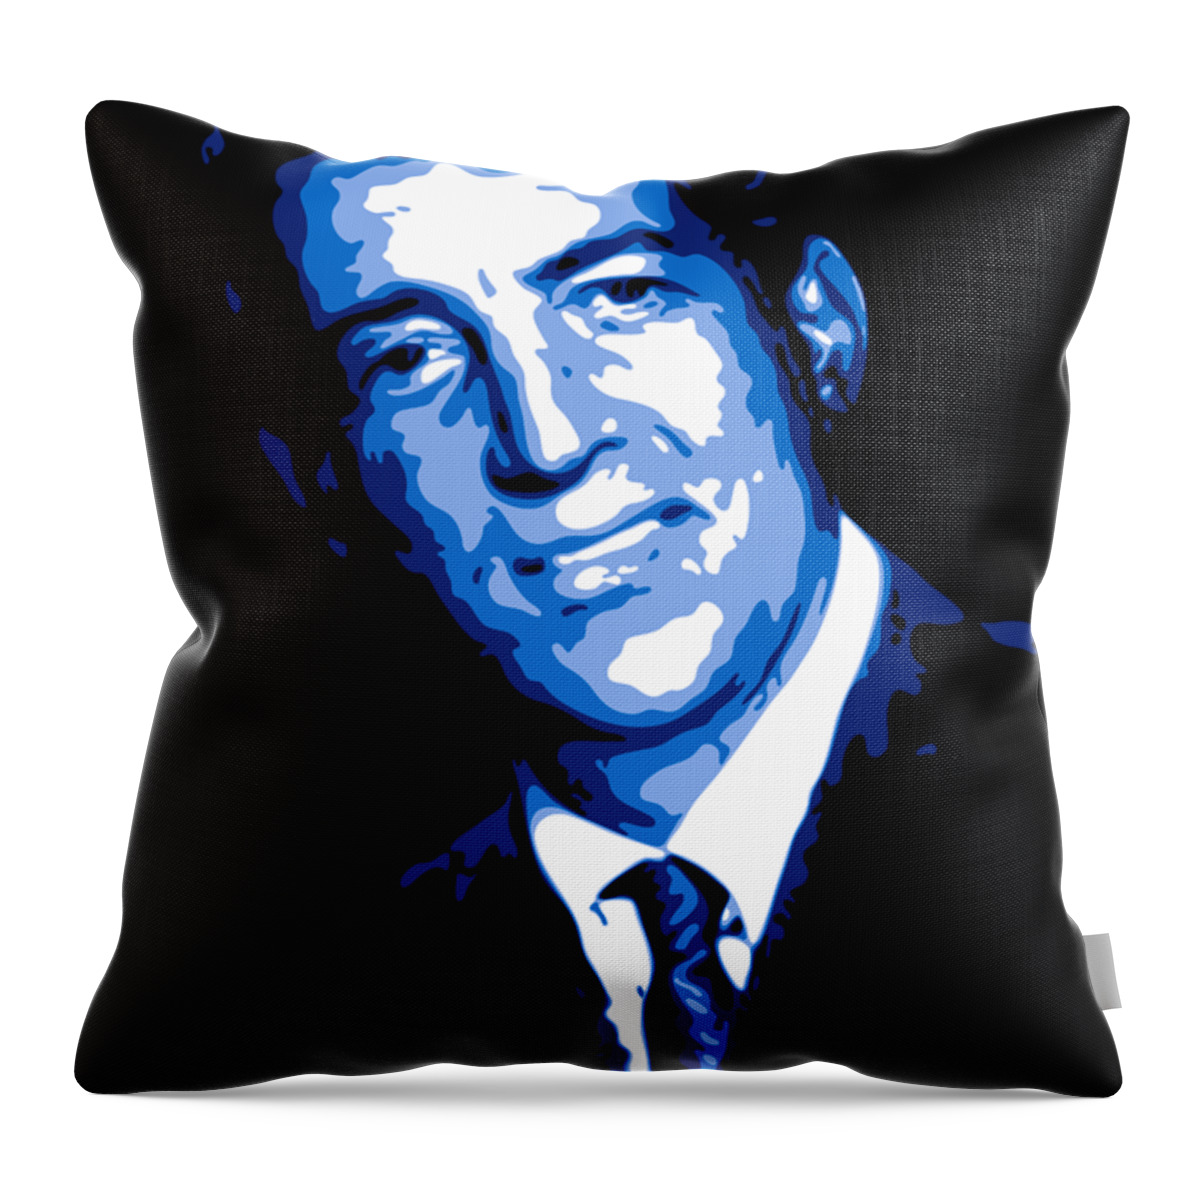 Dean Martin Throw Pillow featuring the digital art Dean Martin by DB Artist